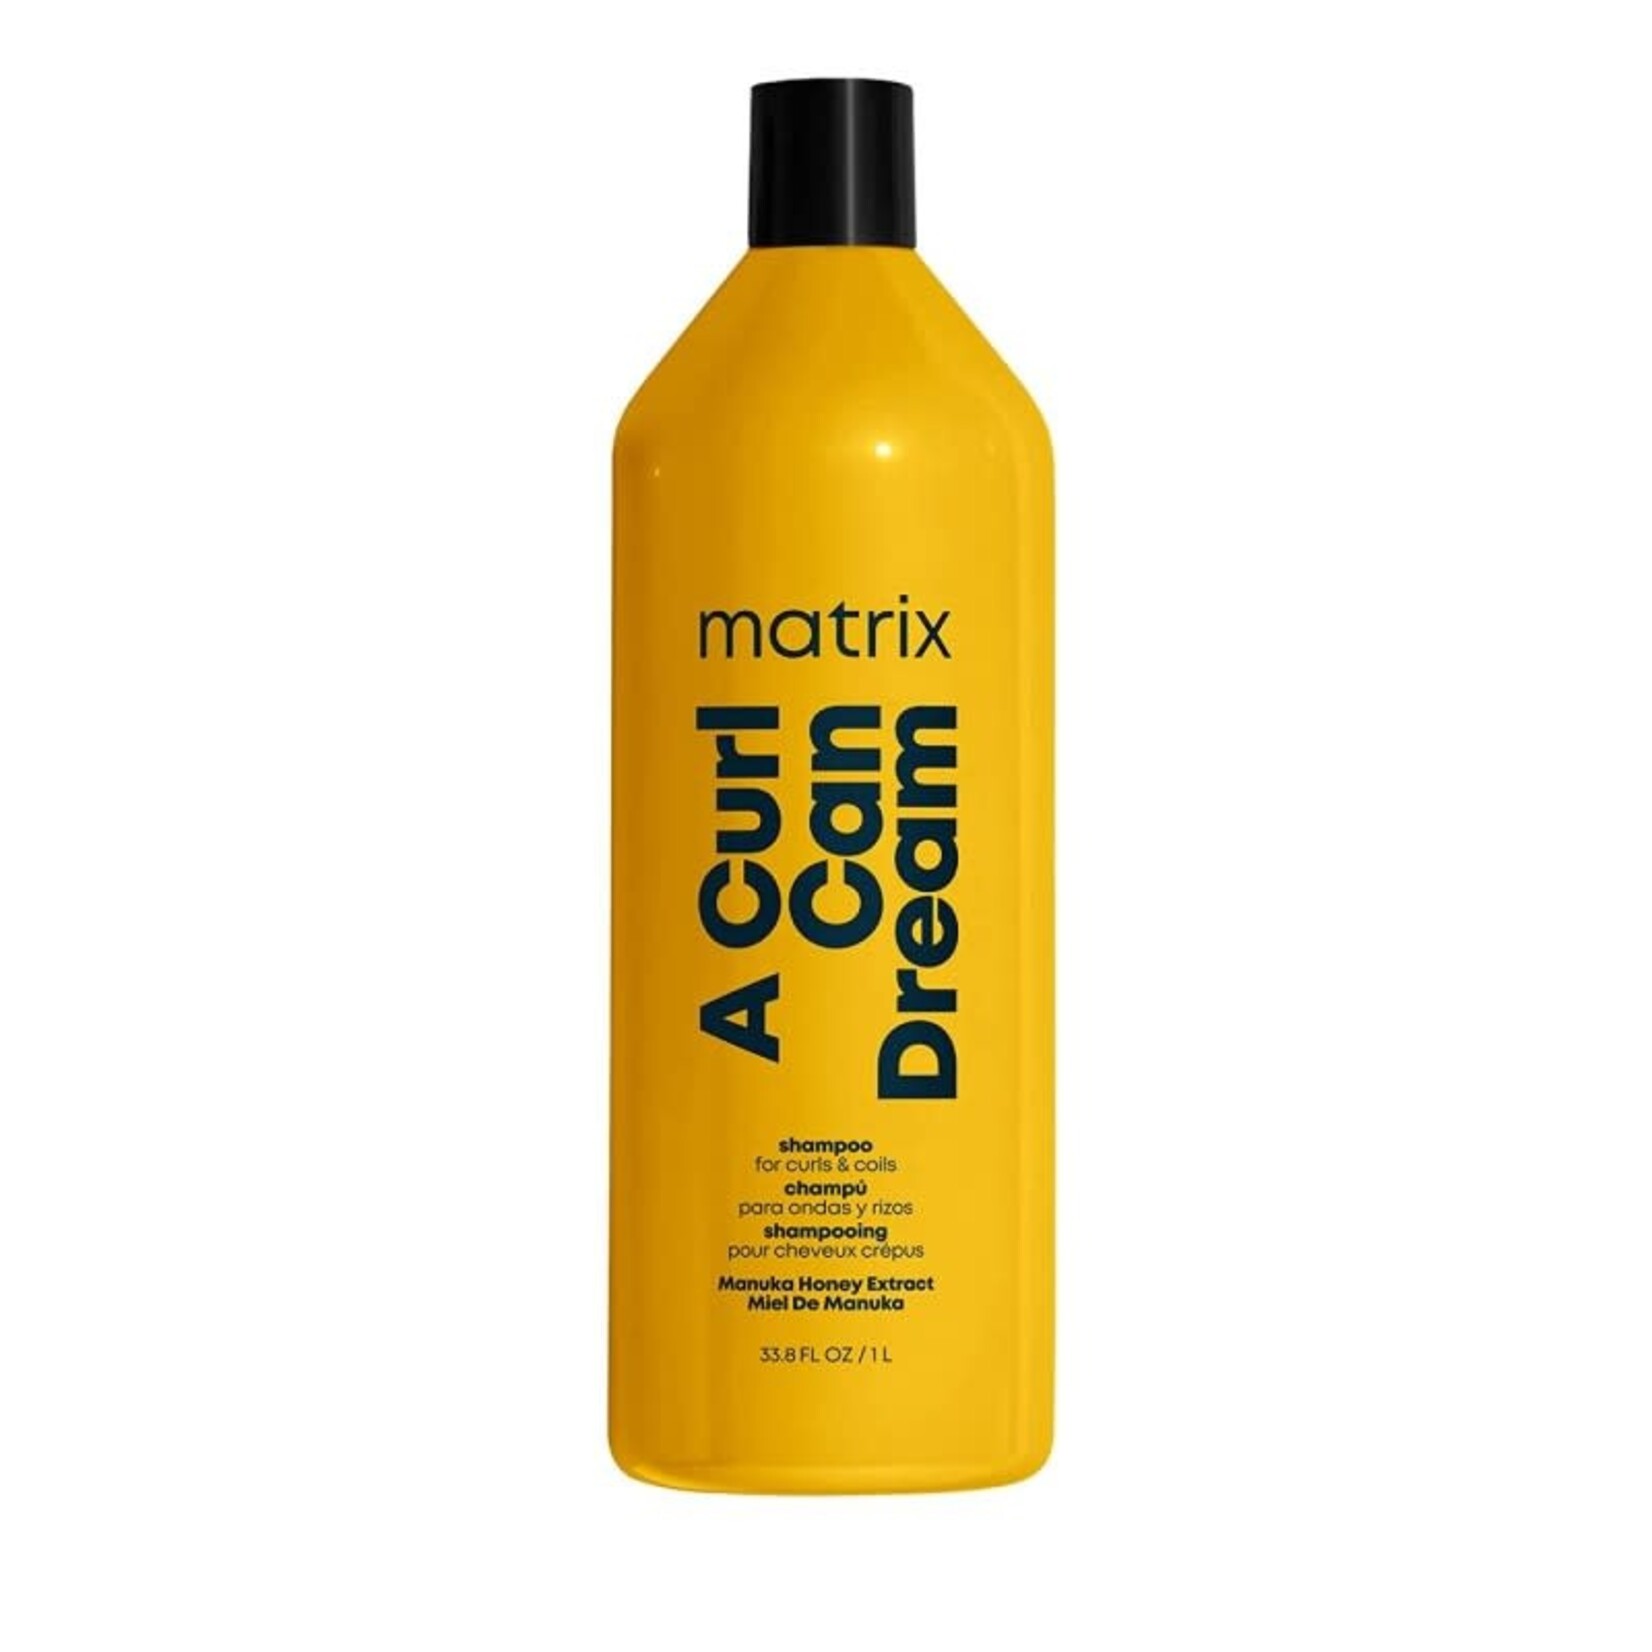 Matrix Matrix - A Curl Can Dream - Shampoo 1 Liter